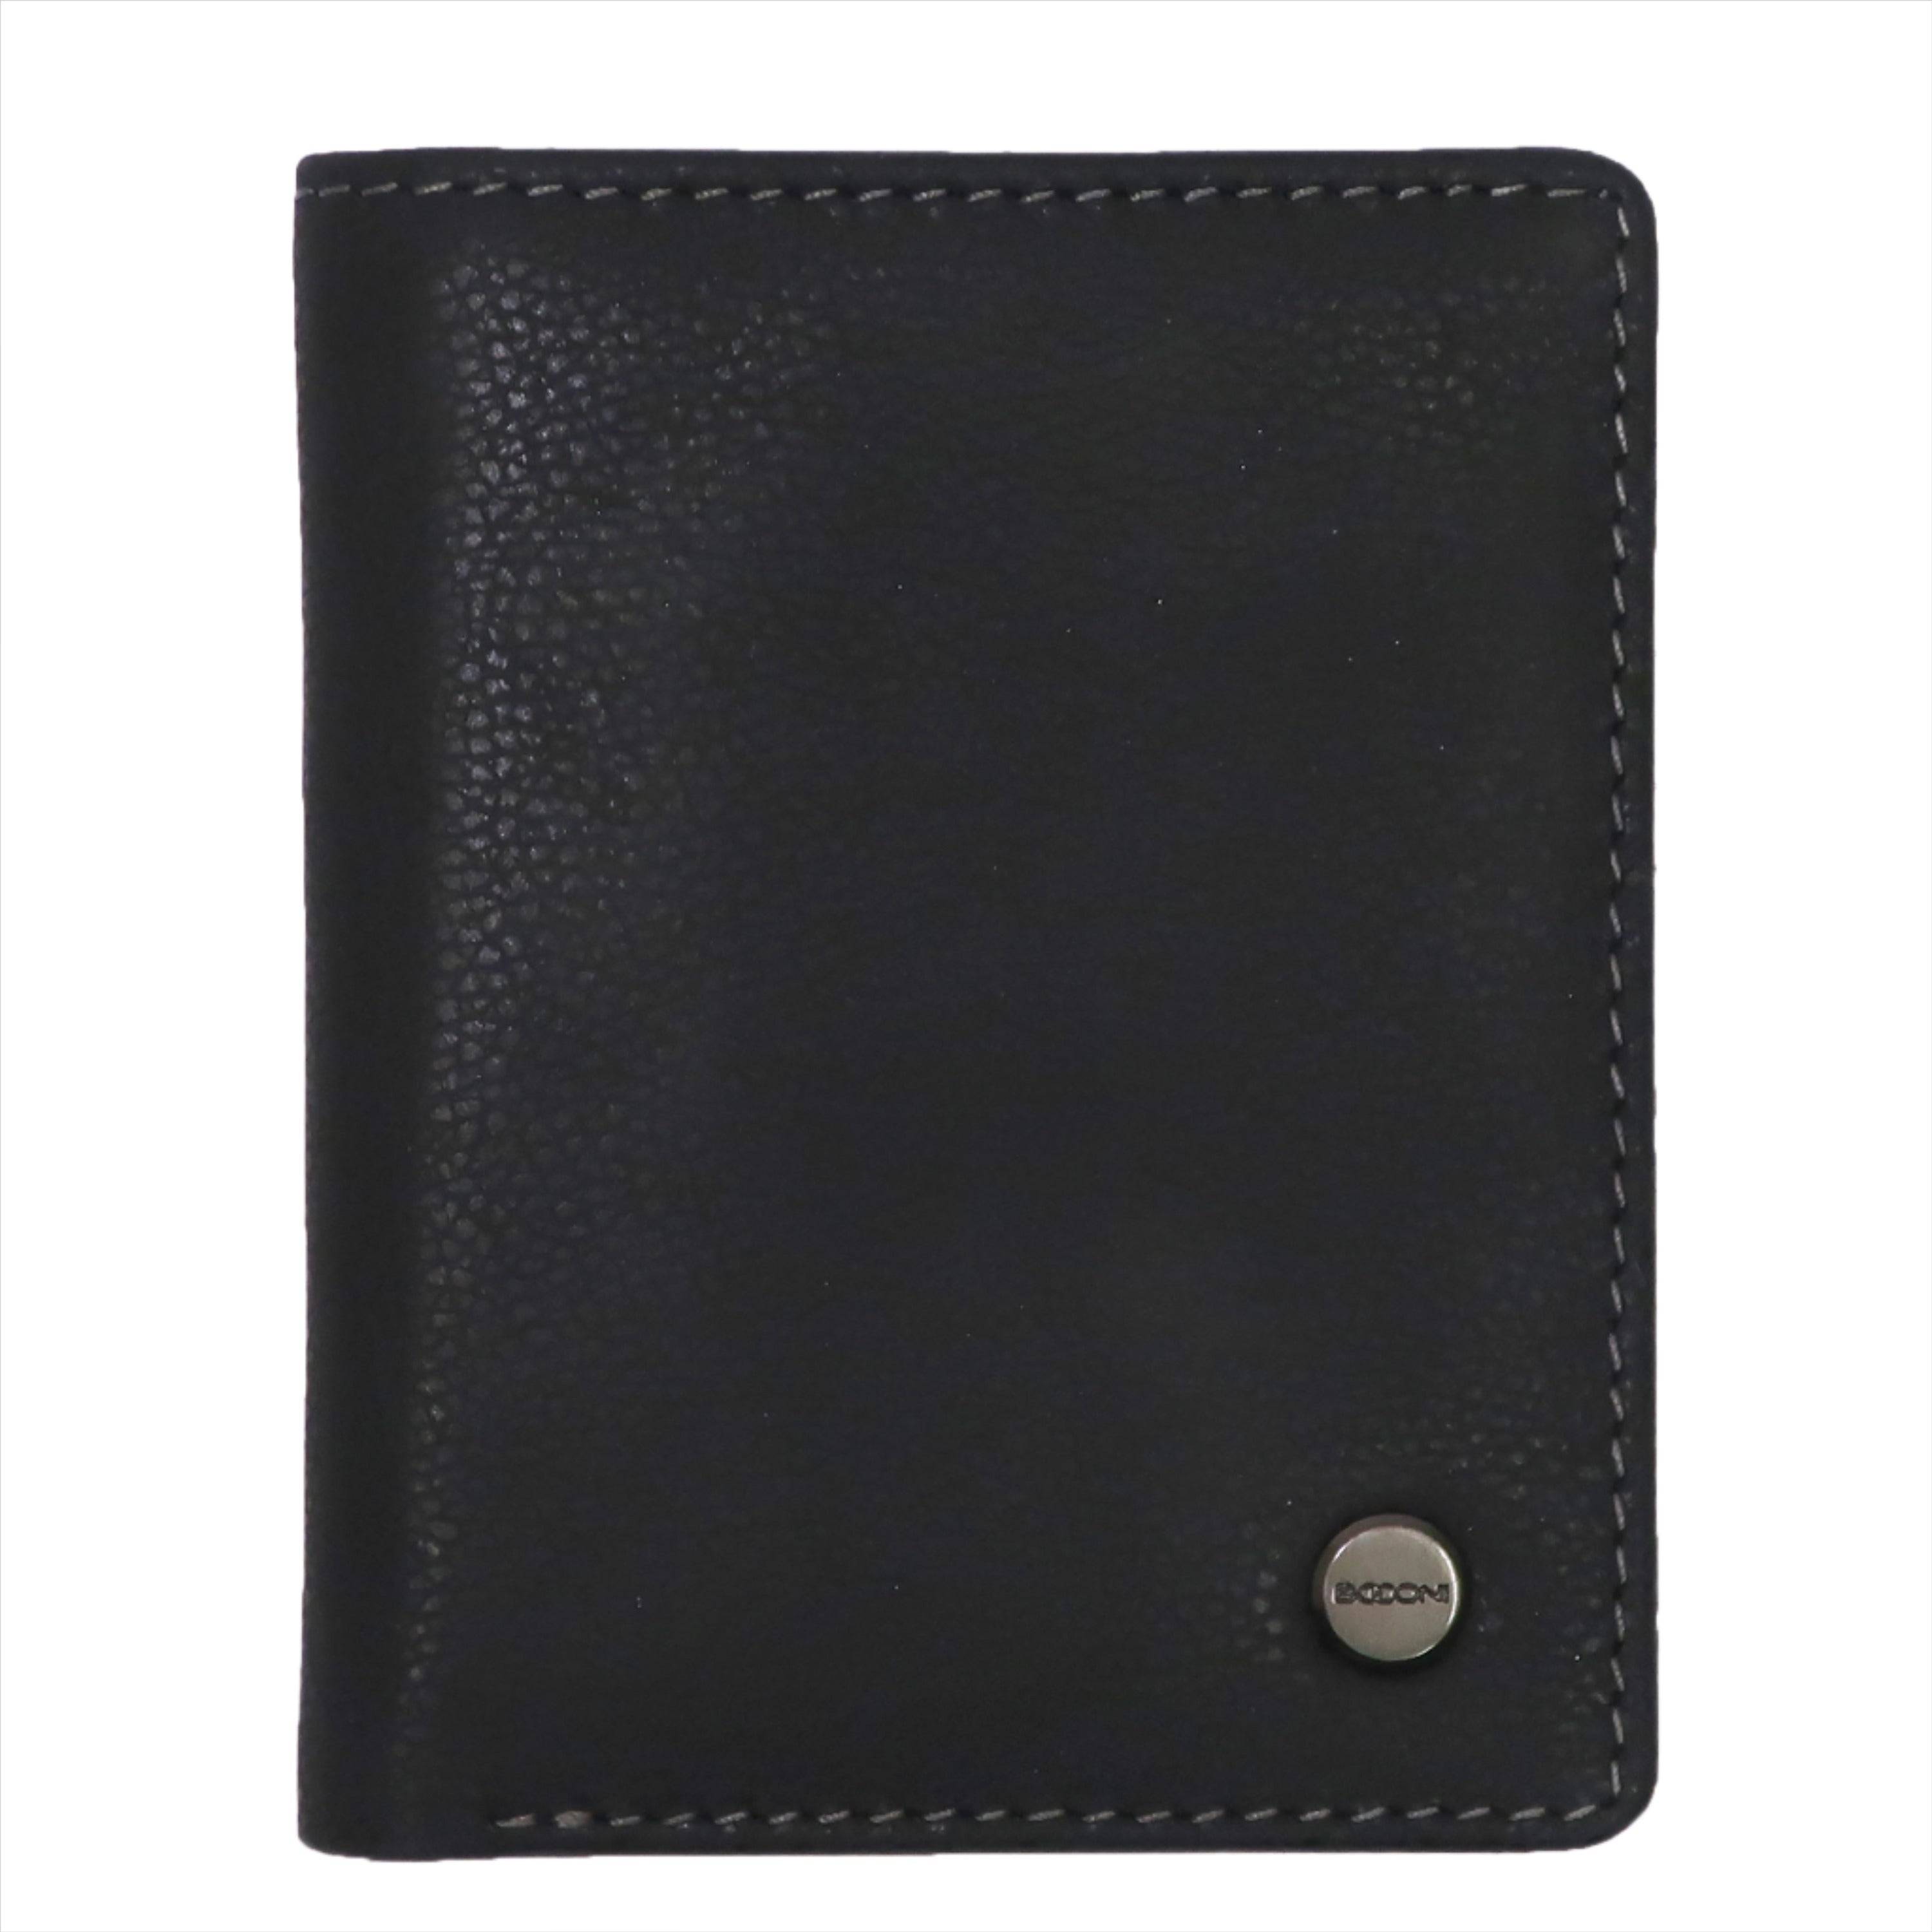 black Boconi front pocket leather bifold wallet